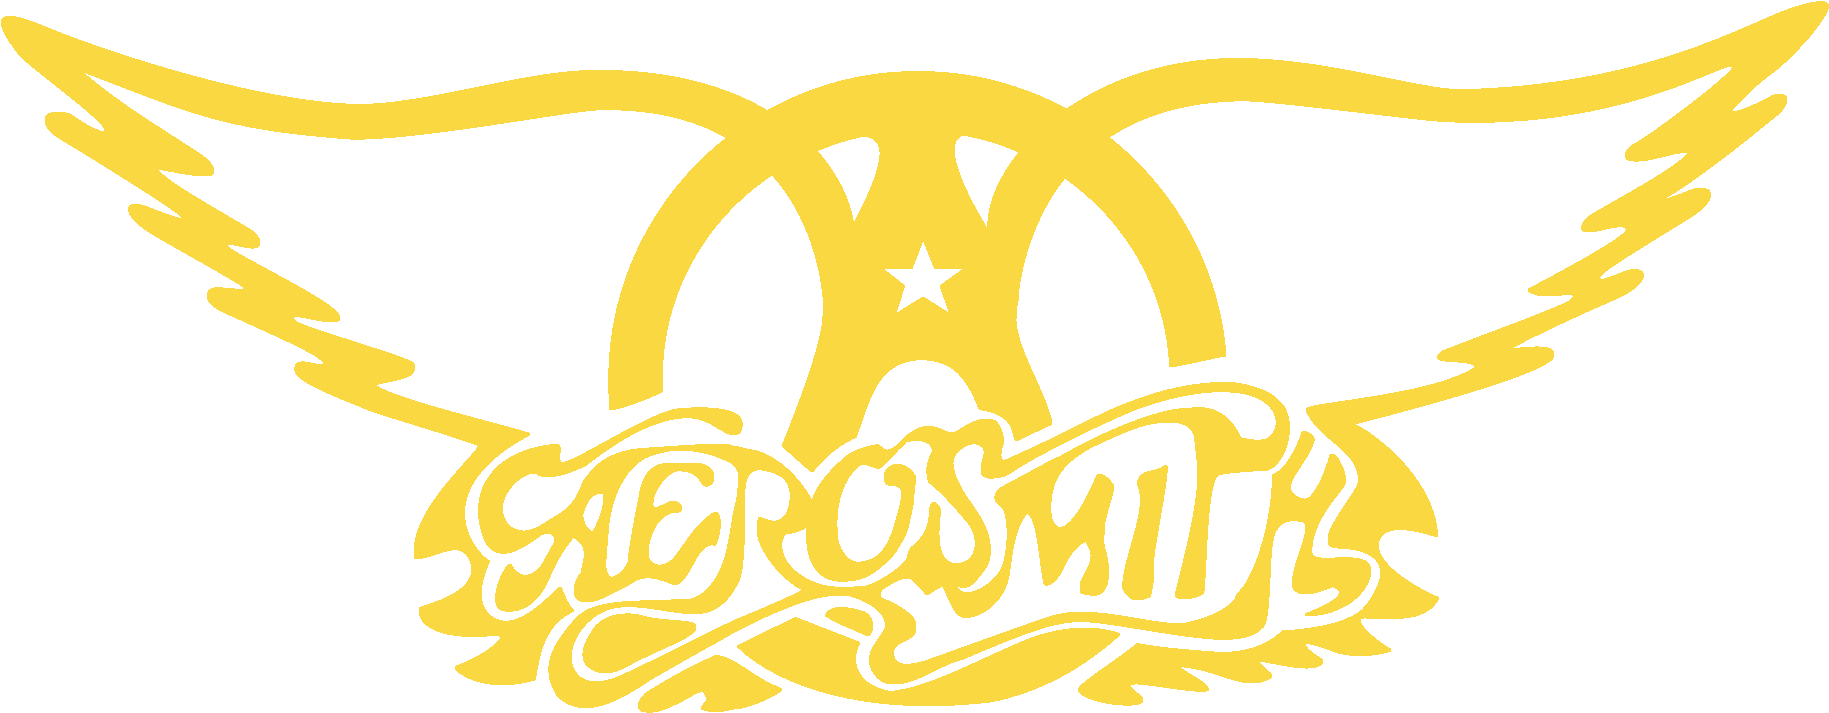 Aerosmith Band Logo PNG Image